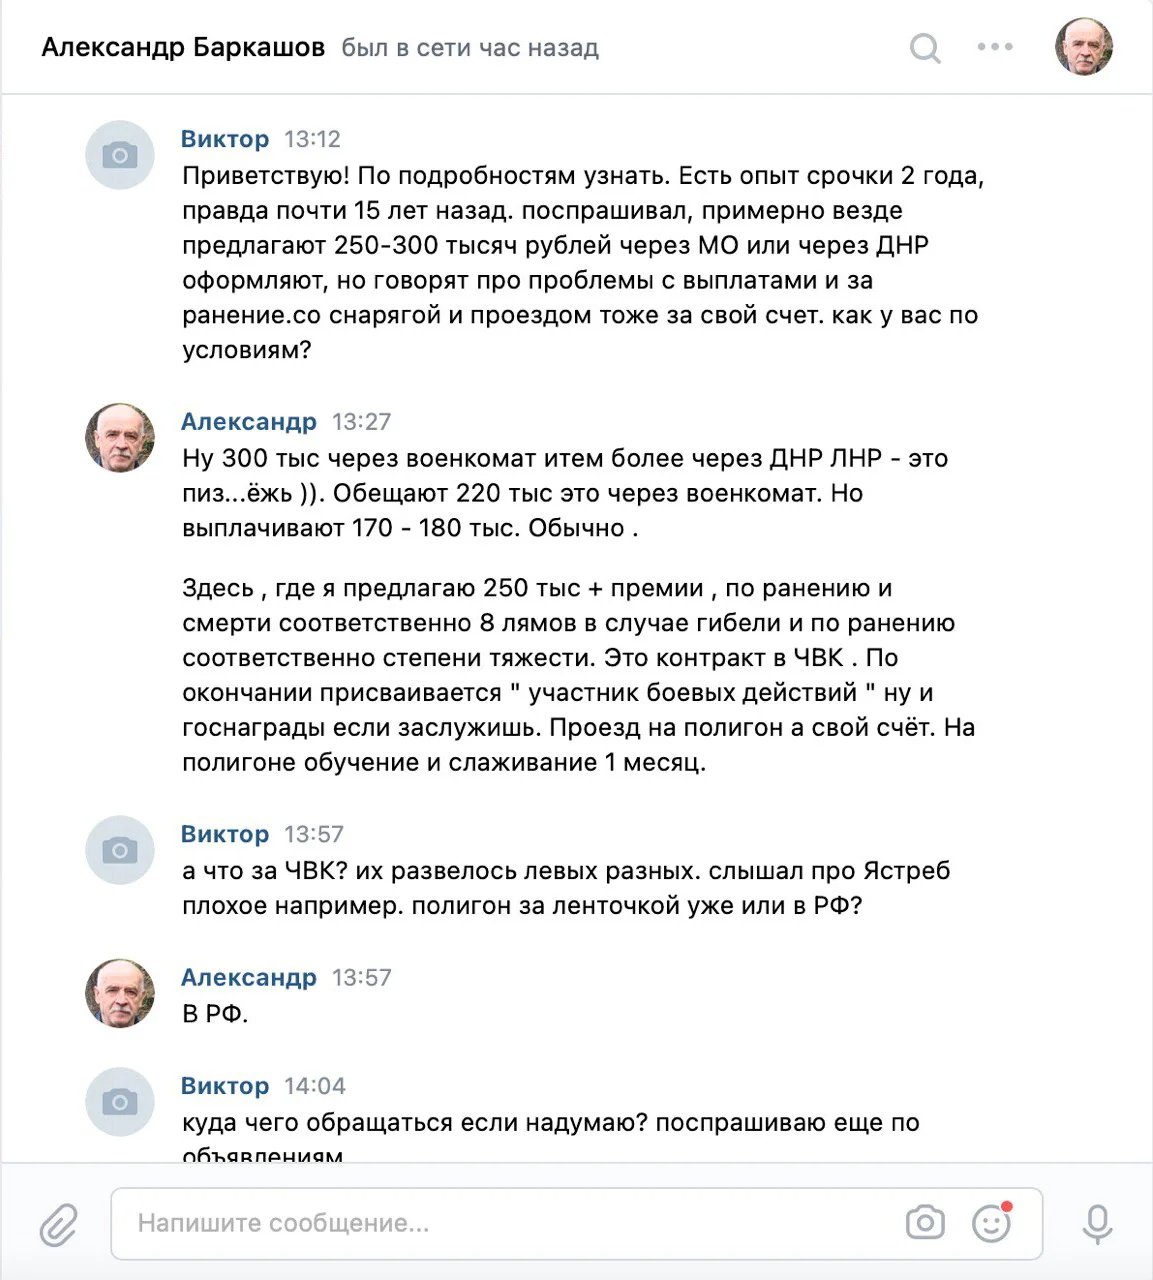 Our messages with Alexander Barkashov on Vkontakte